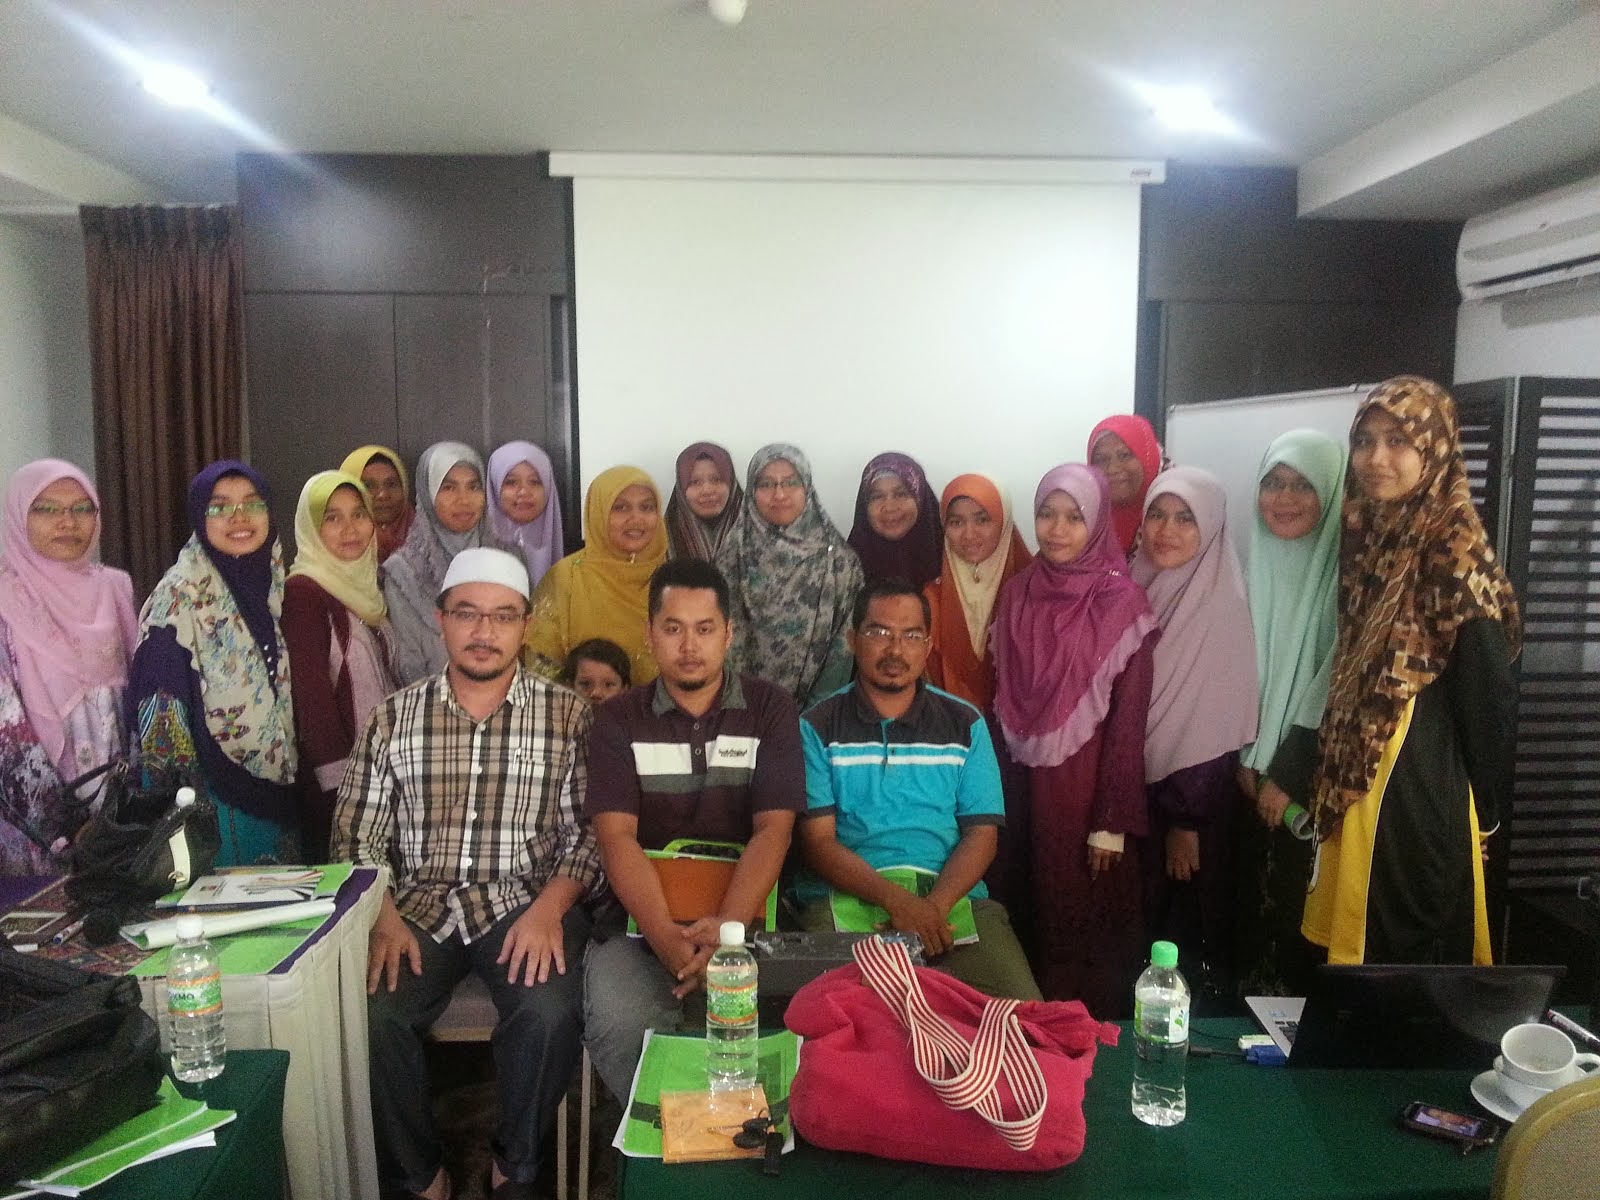 Bengkel Mendorong Pelajar & Anak di Kota Bharu I 30.11.13